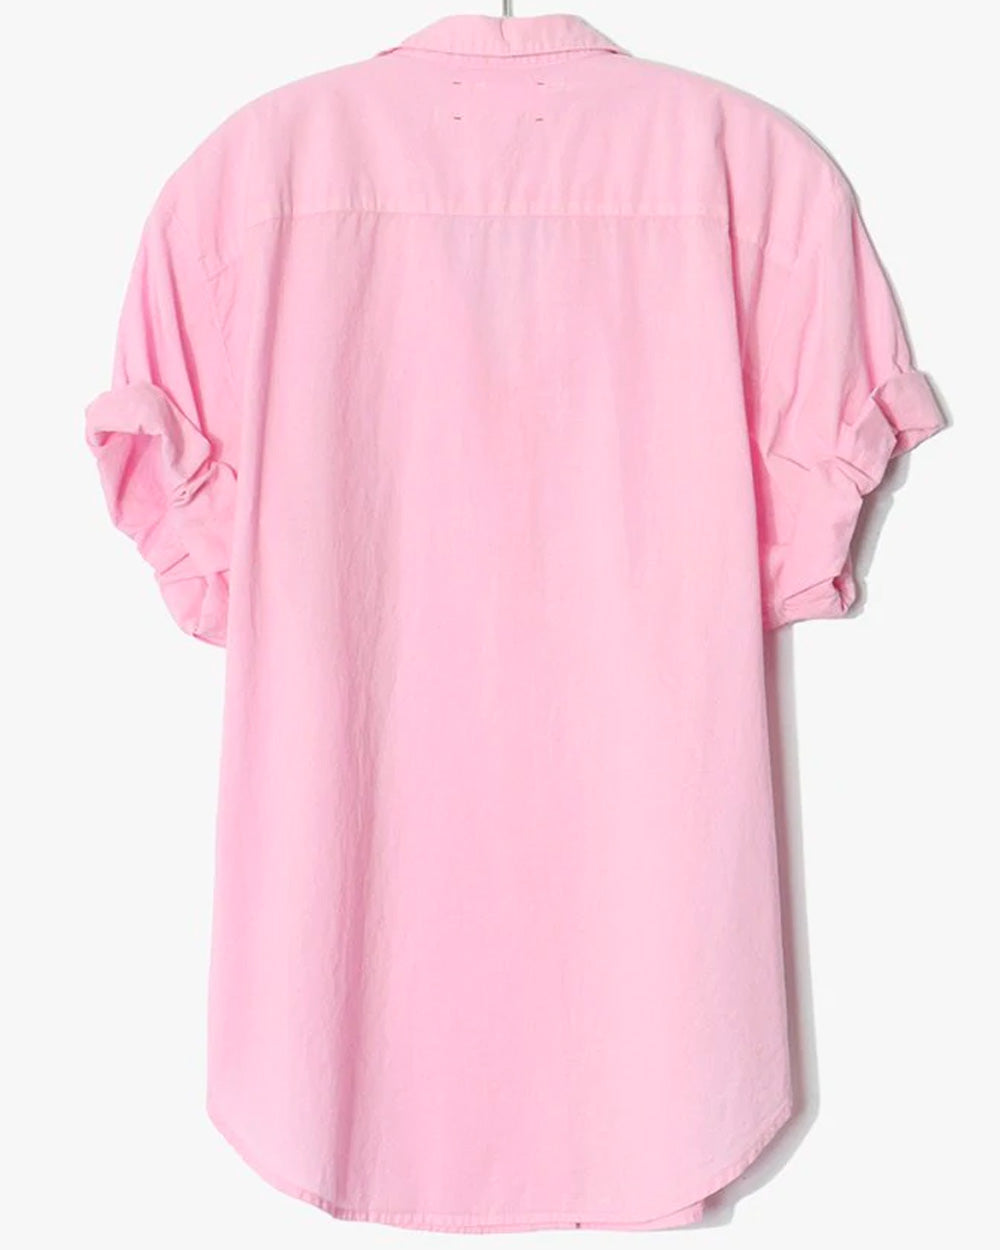 Pink Rose Channing Shirt